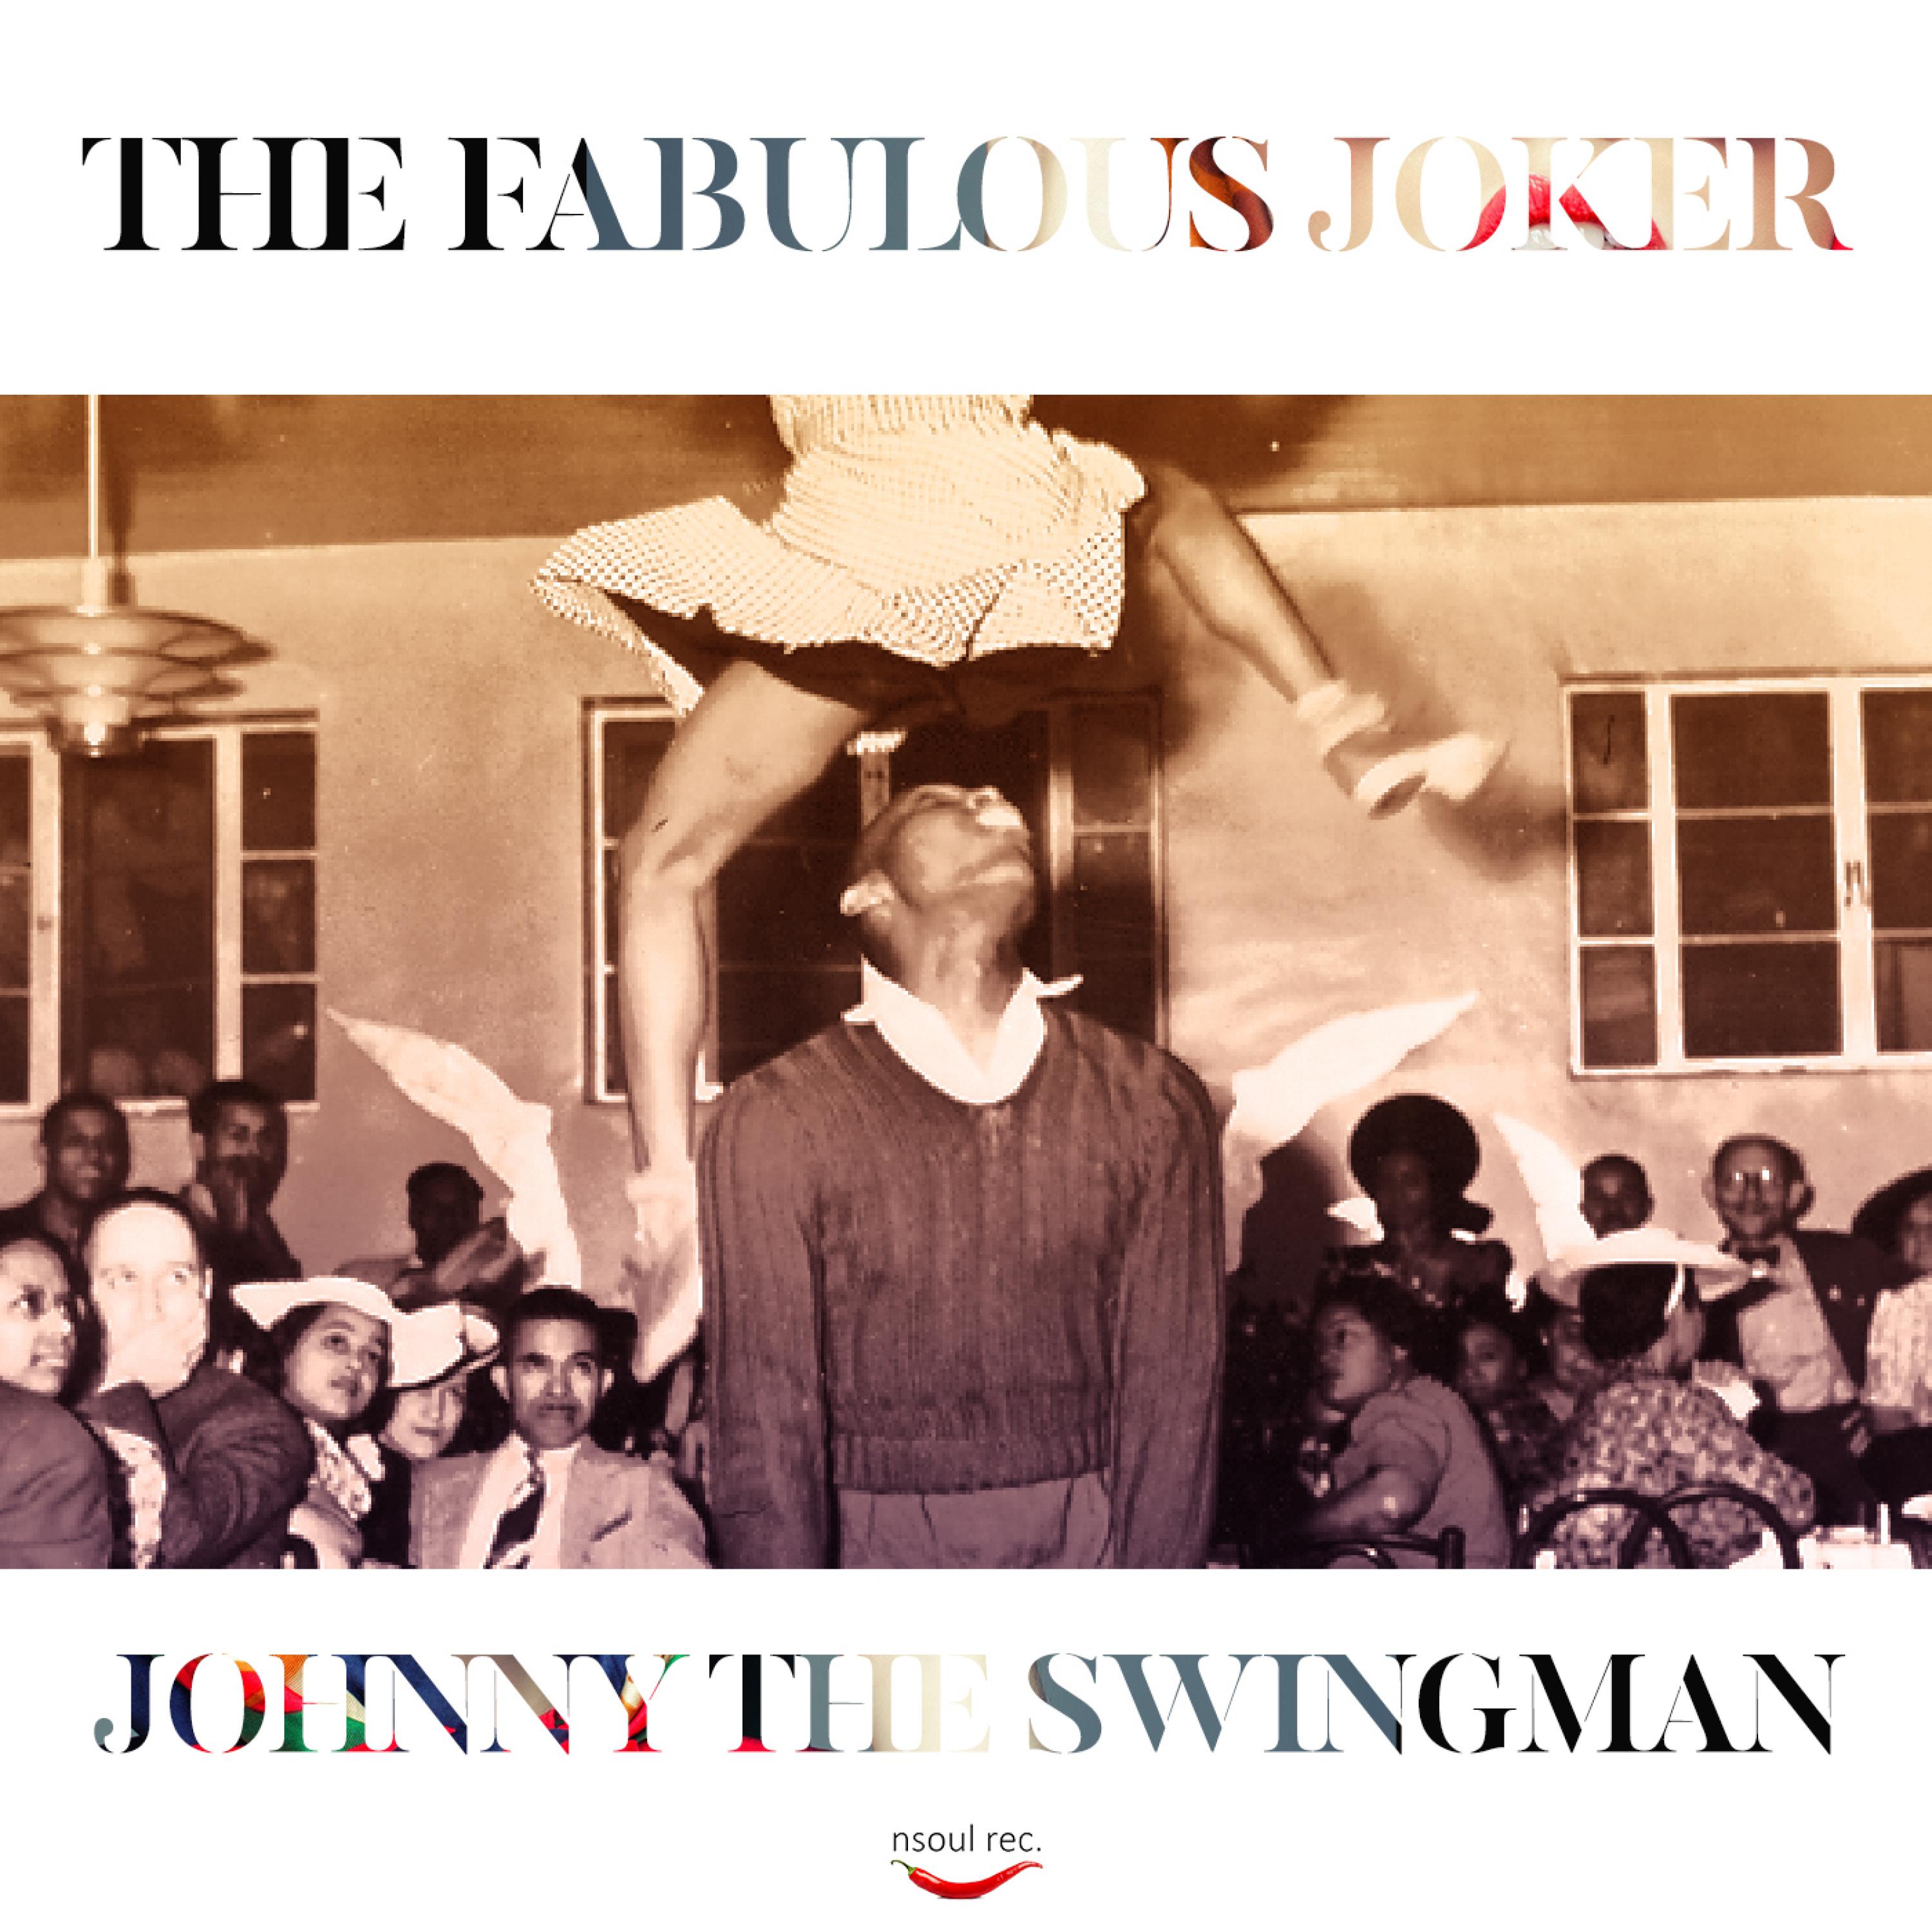 Johnny the Swingman